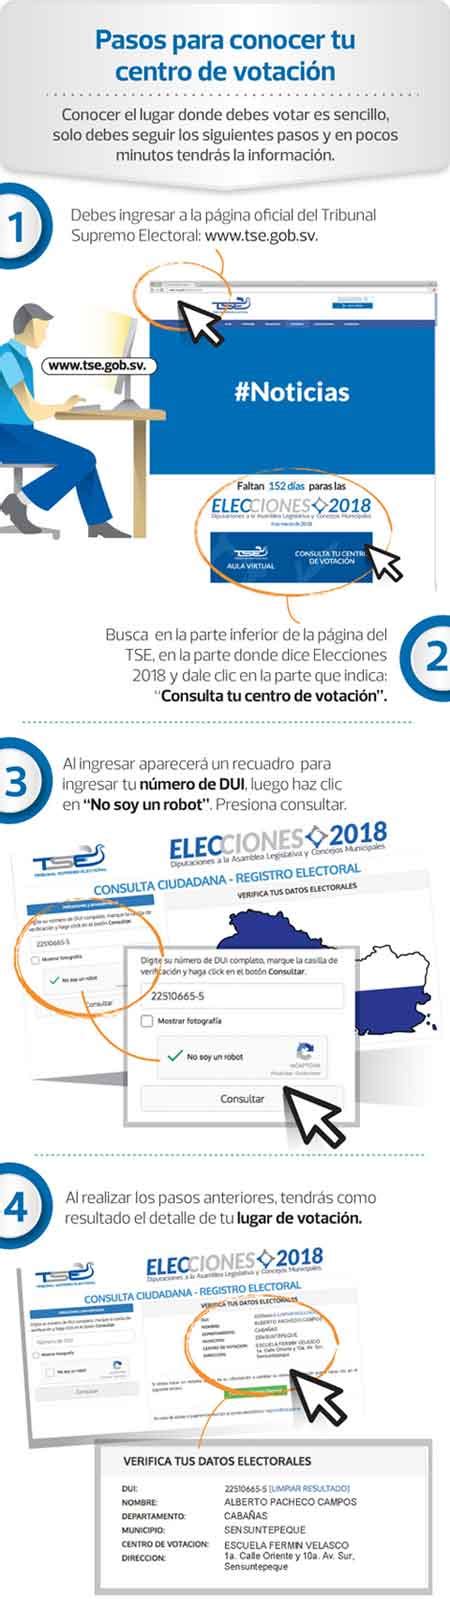 Servel habilitó una plataforma que permite a los ciudadanos consultar información sobre las elecciones municipales. Dónde me toca votar 2018 - El Salvador mi país